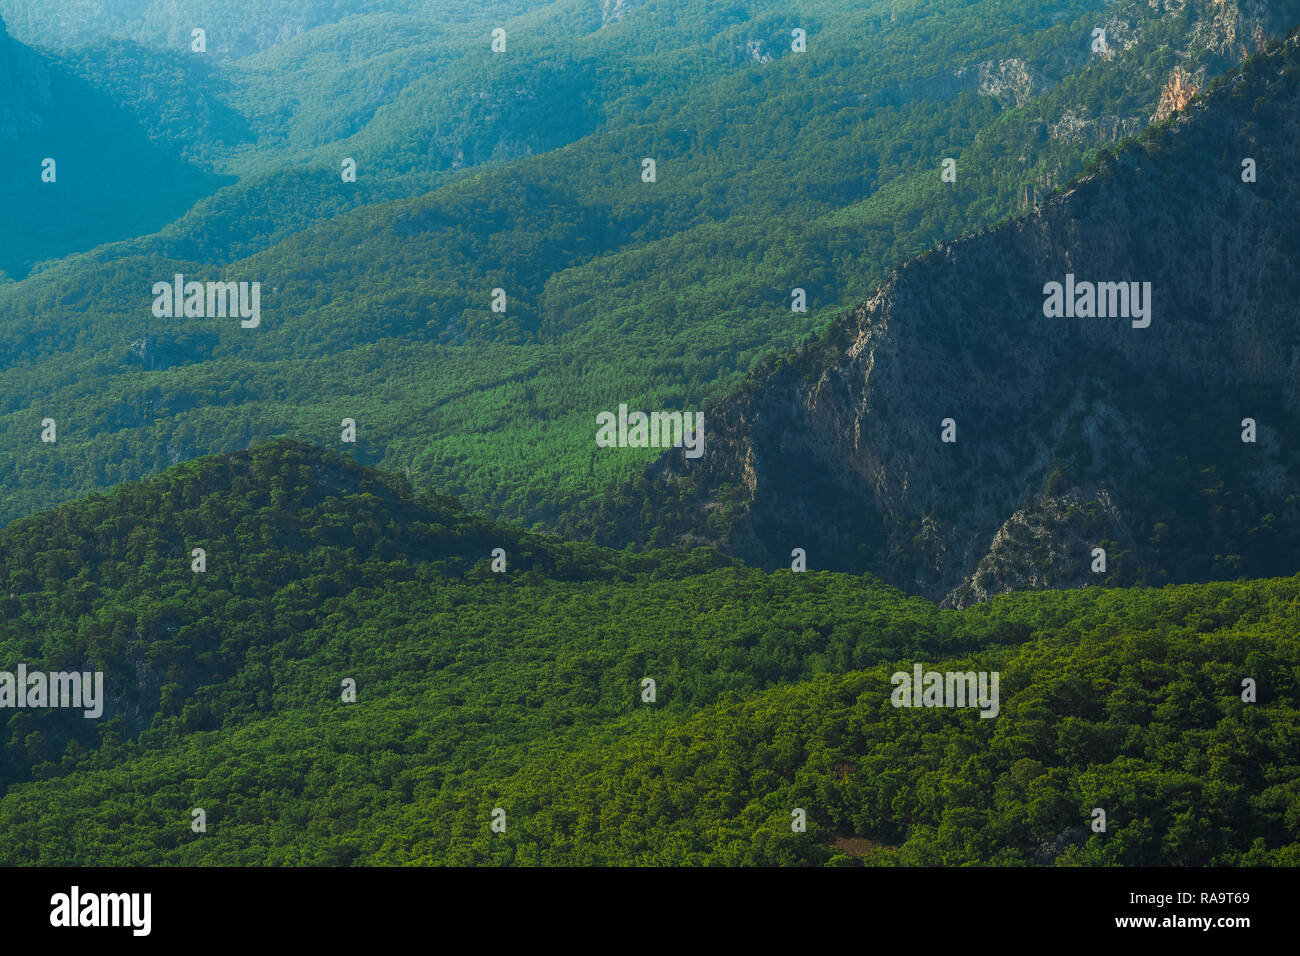 Schöne Luftaufnahme auf grün bewaldeten Hügeln der Berge in der Türkei. Hügel mit dicken Holz wächst. Horizontale Farbfotografie. Stockfoto